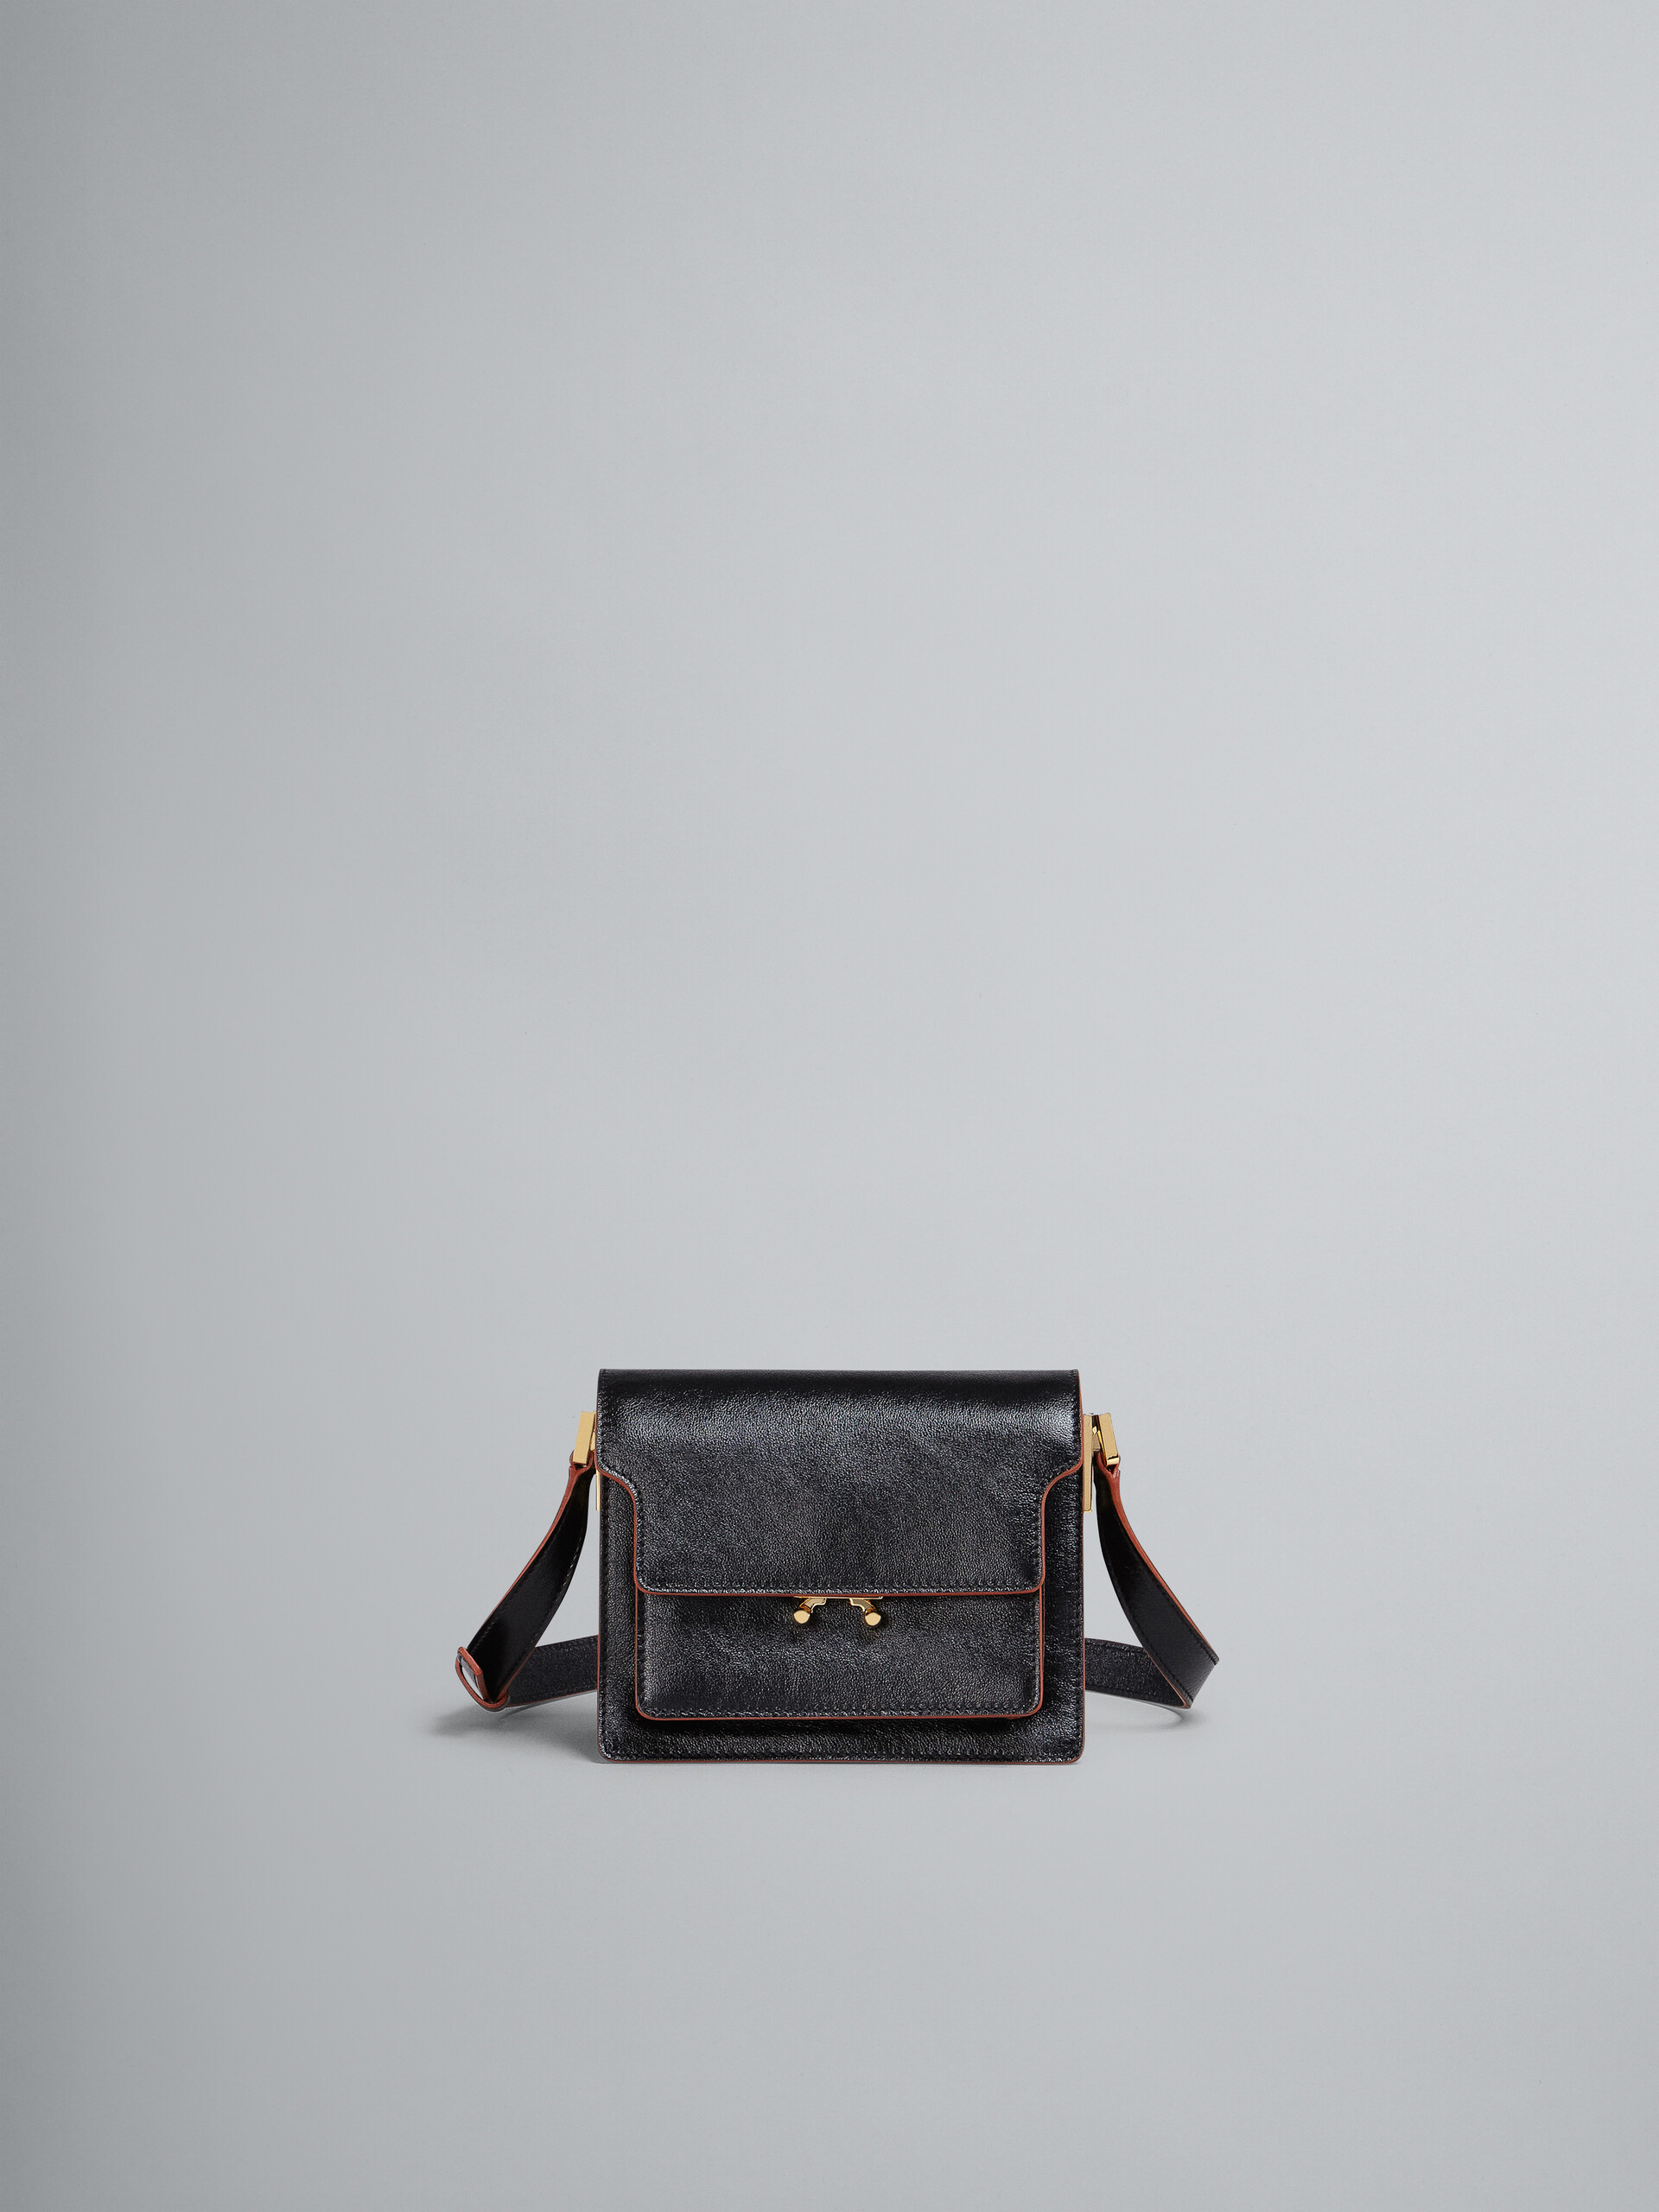 TRUNK SOFT bag mini in vitello bottalato nero - Borse a spalla - Image 1